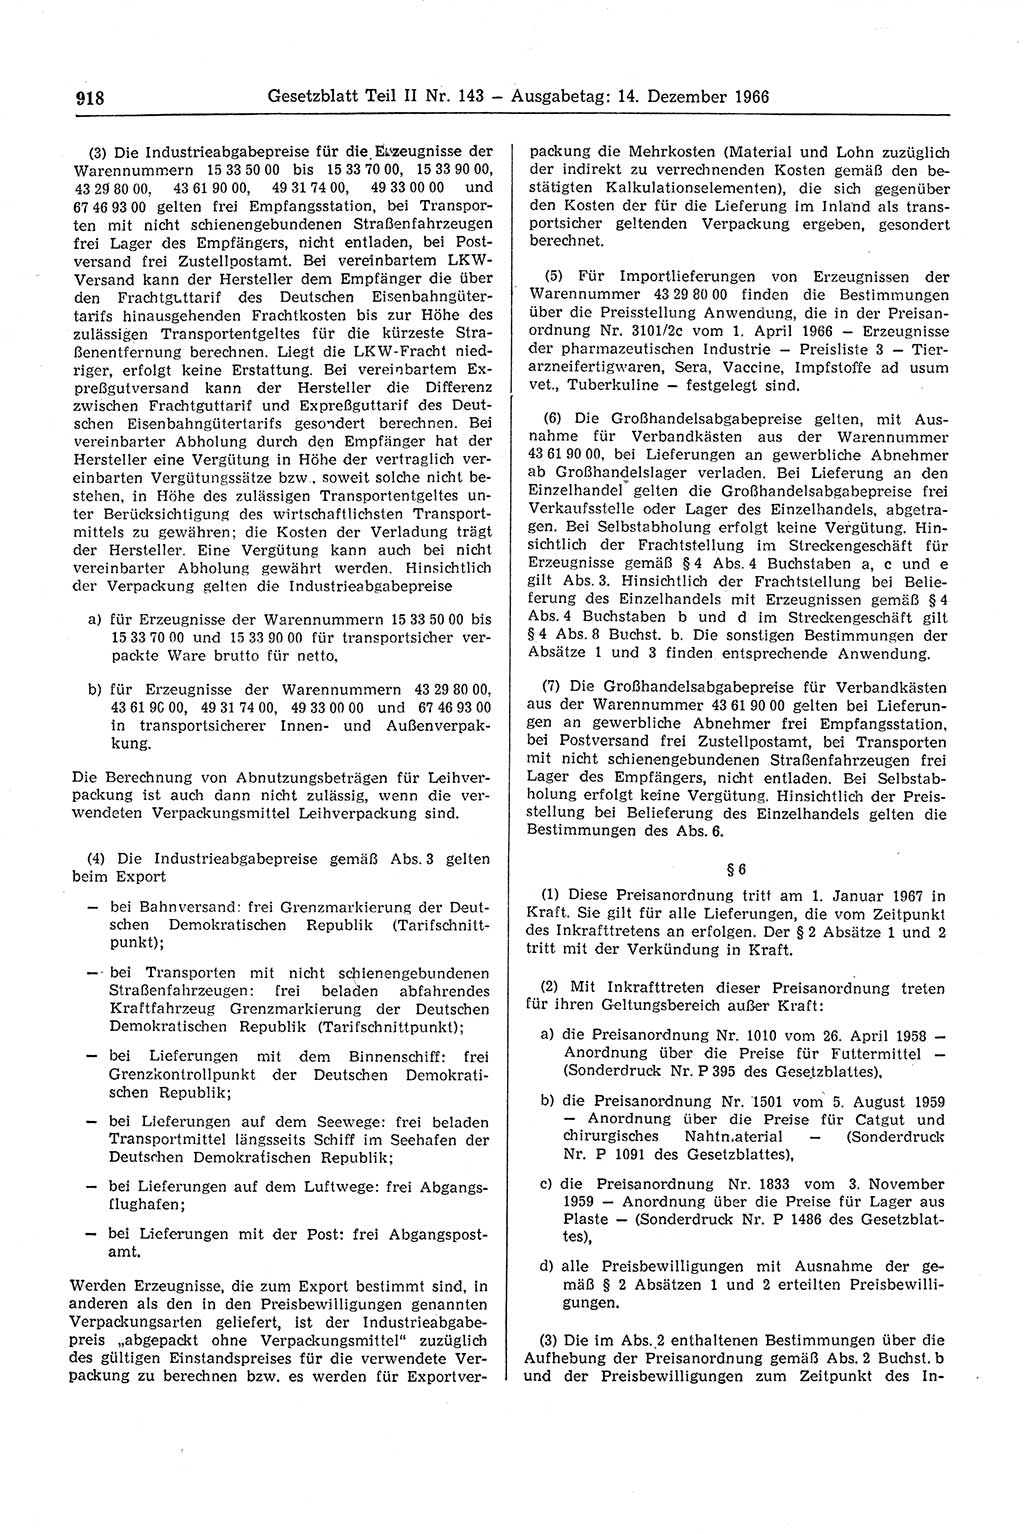 Gesetzblatt (GBl.) der Deutschen Demokratischen Republik (DDR) Teil ⅠⅠ 1966, Seite 918 (GBl. DDR ⅠⅠ 1966, S. 918)